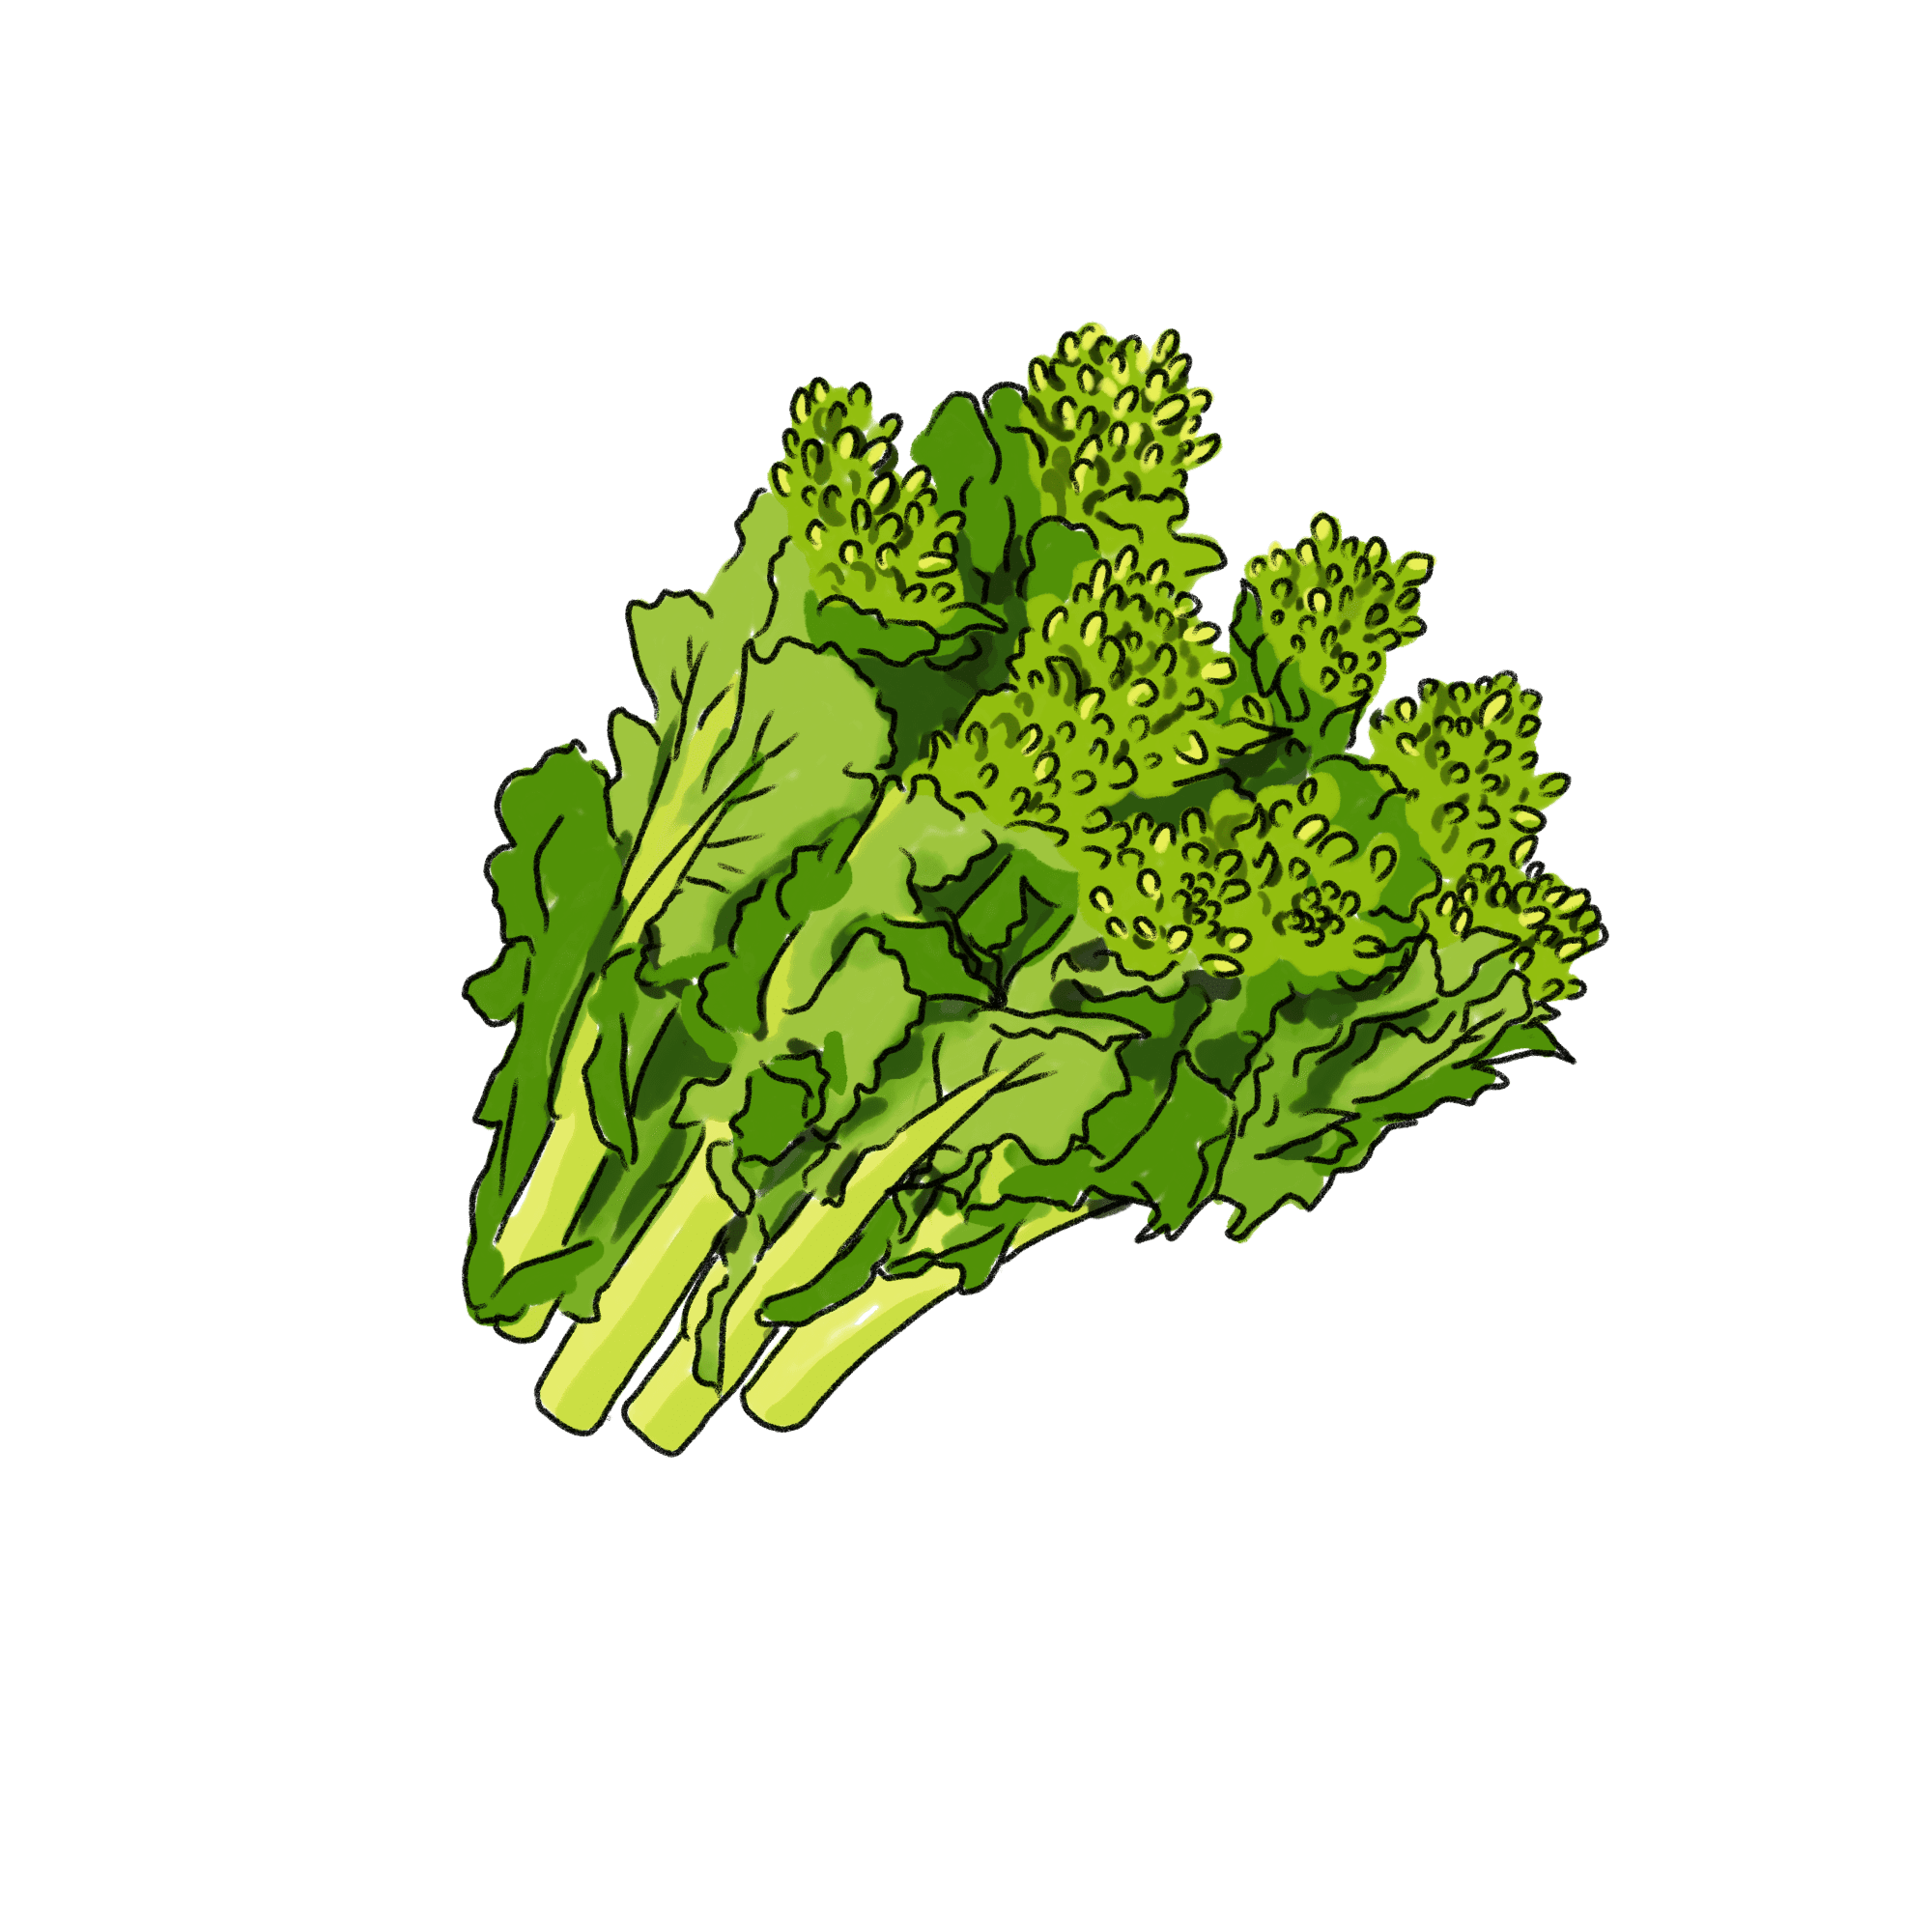 菜の花のイラスト 02 フリー素材 Greenstock40